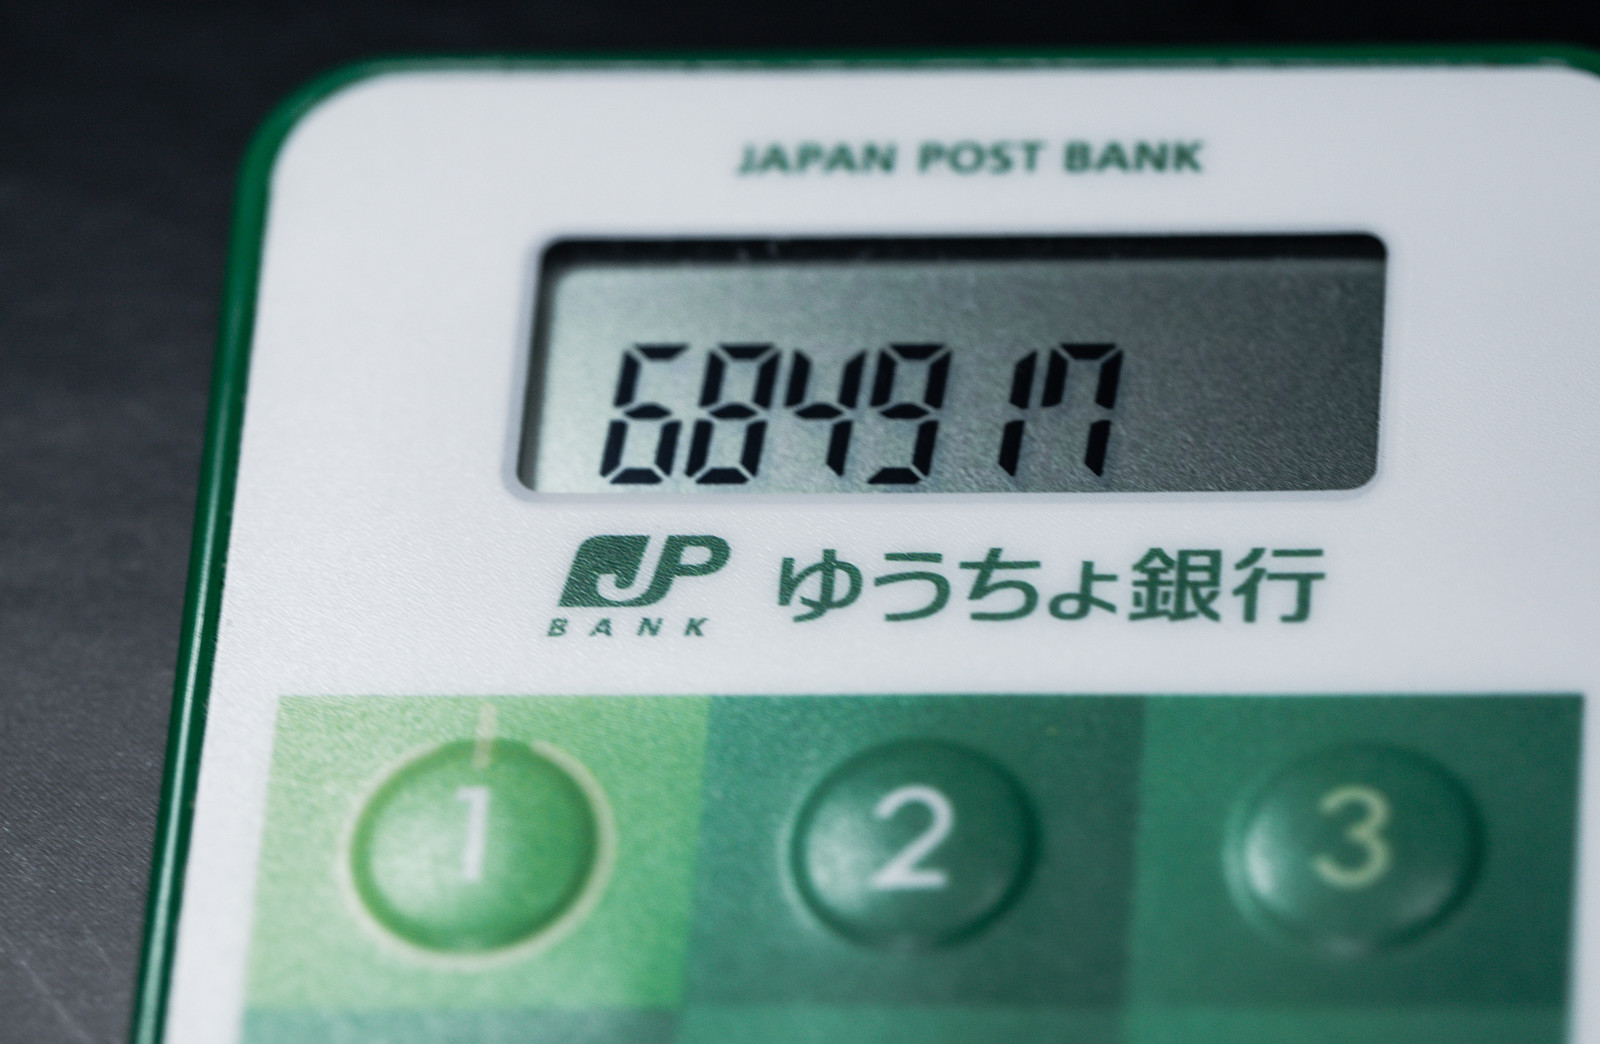 ゆうちょ銀行のセキュリティ認証の画像